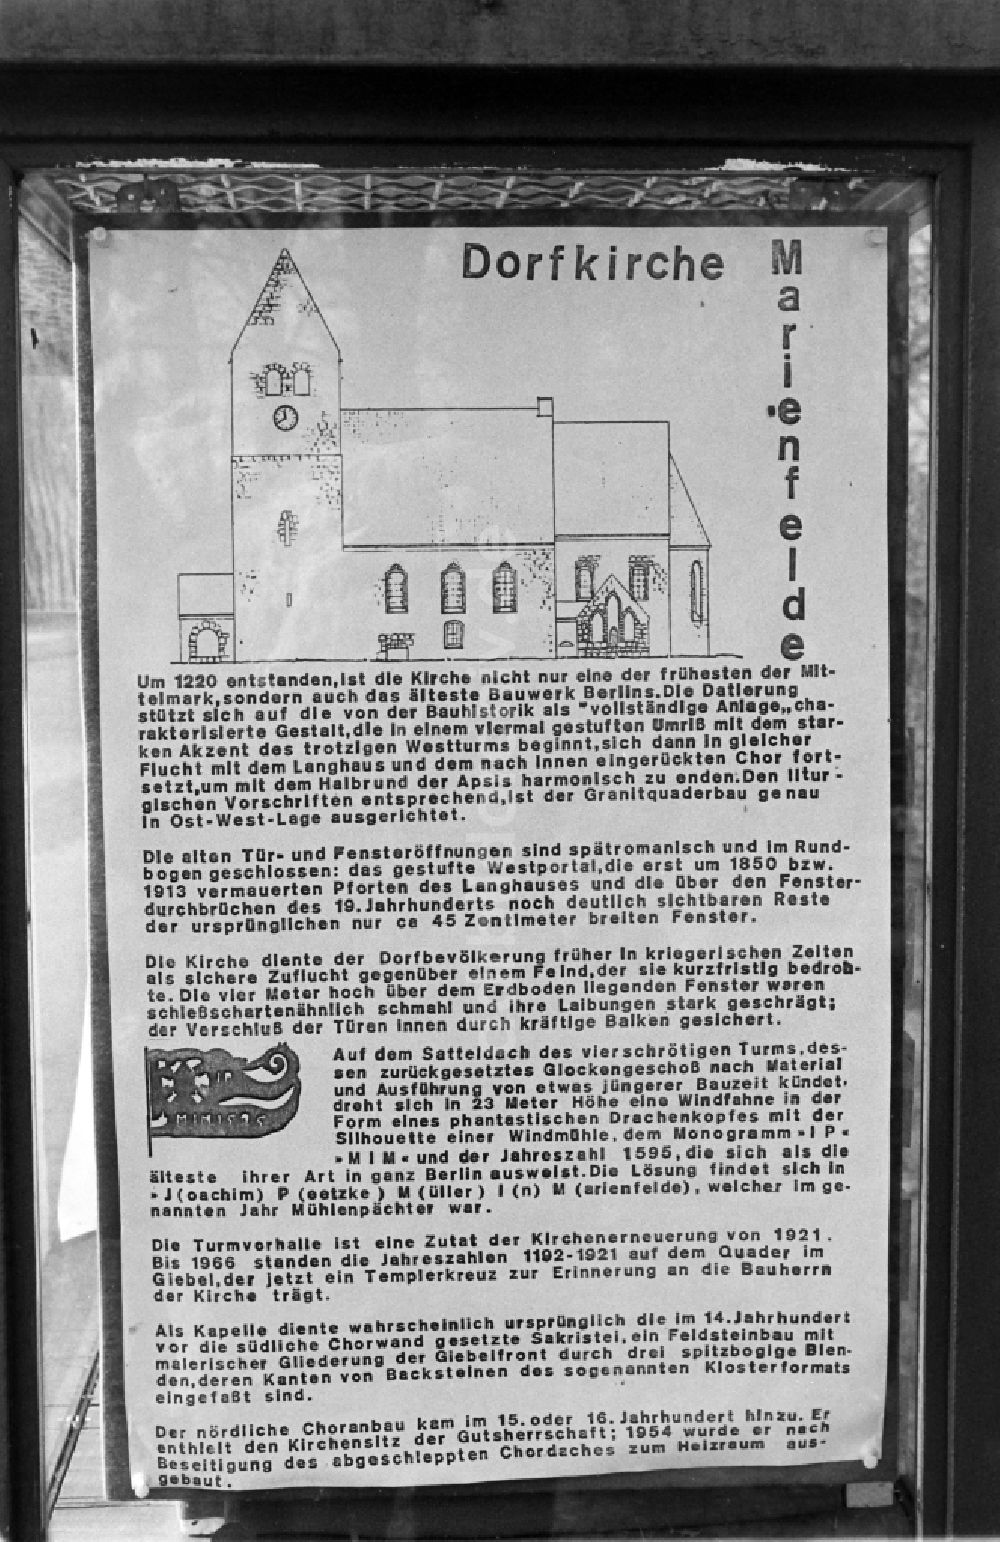 DDR-Fotoarchiv: Berlin - Informationstafel zur Dorfkirche Alt-Marienfelde in Berlin